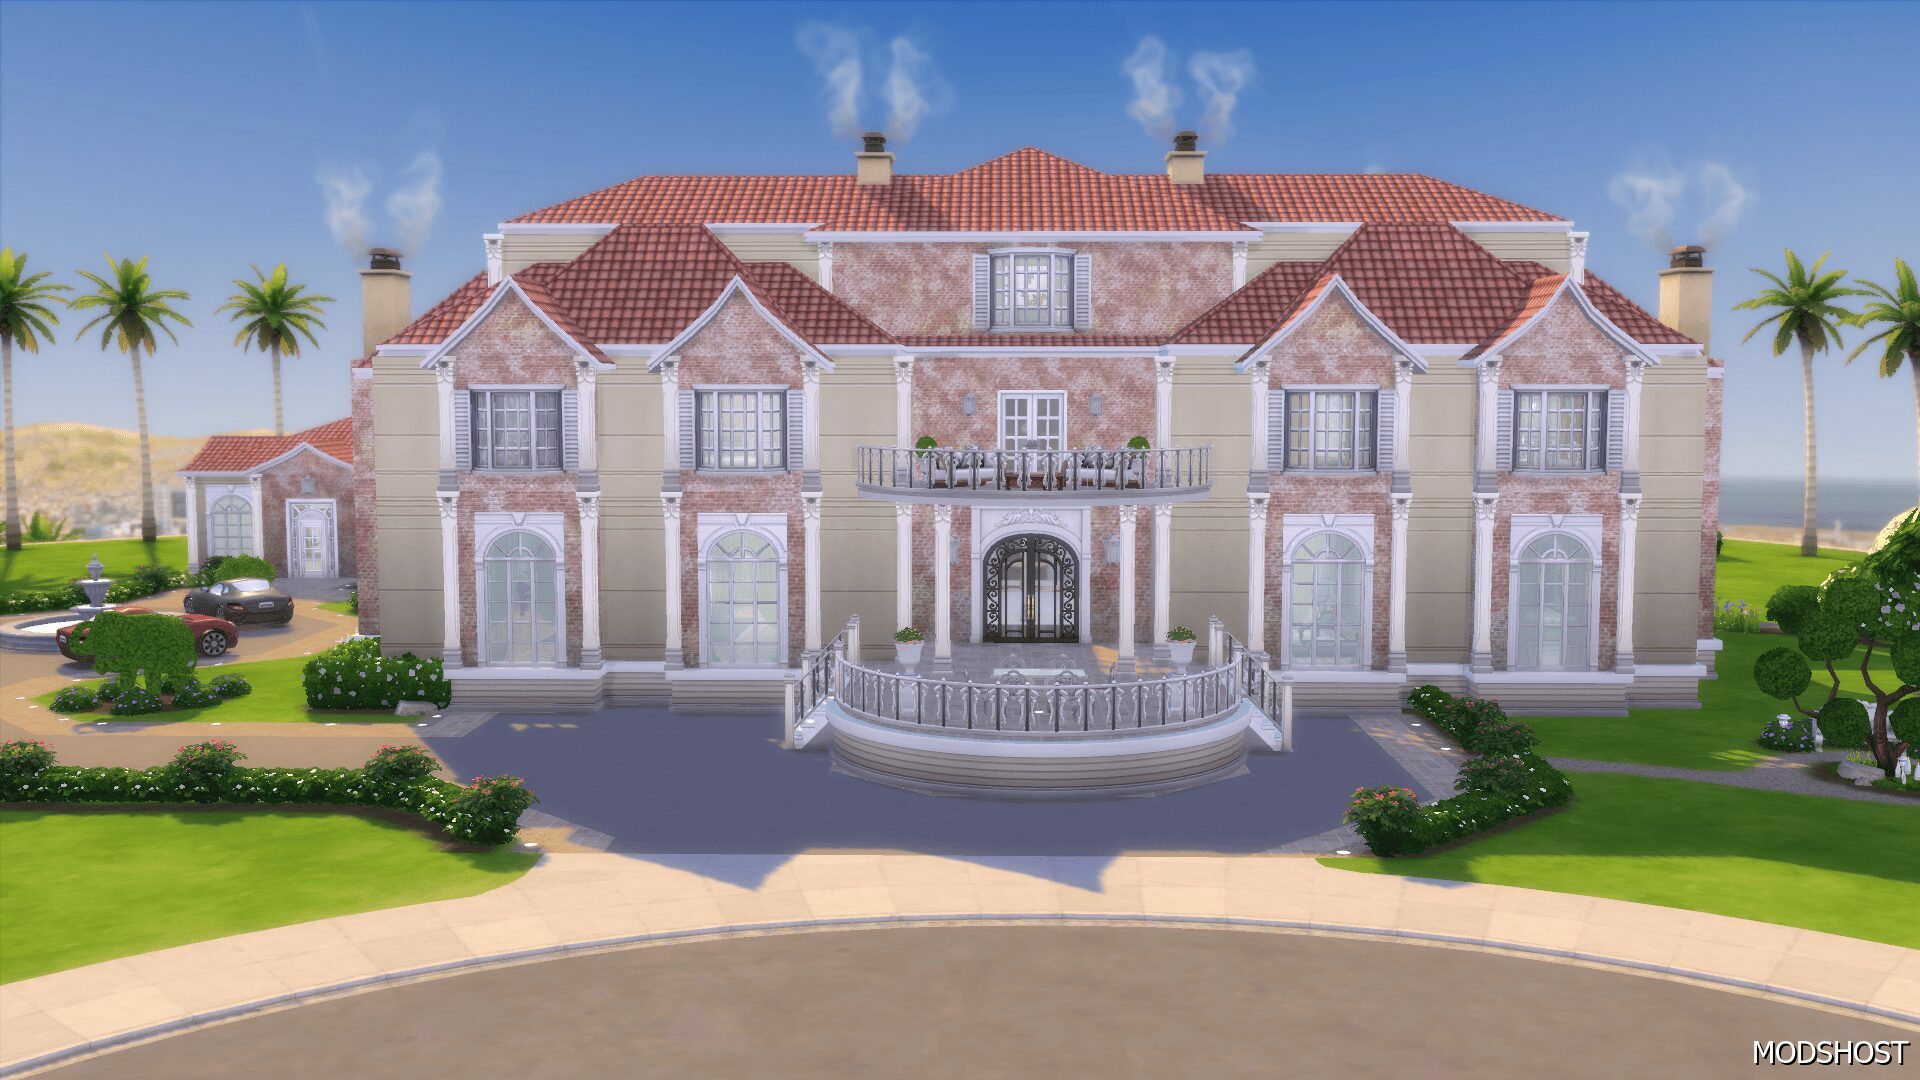 Cliffside Estate No CC Sims 4 House Mod - ModsHost